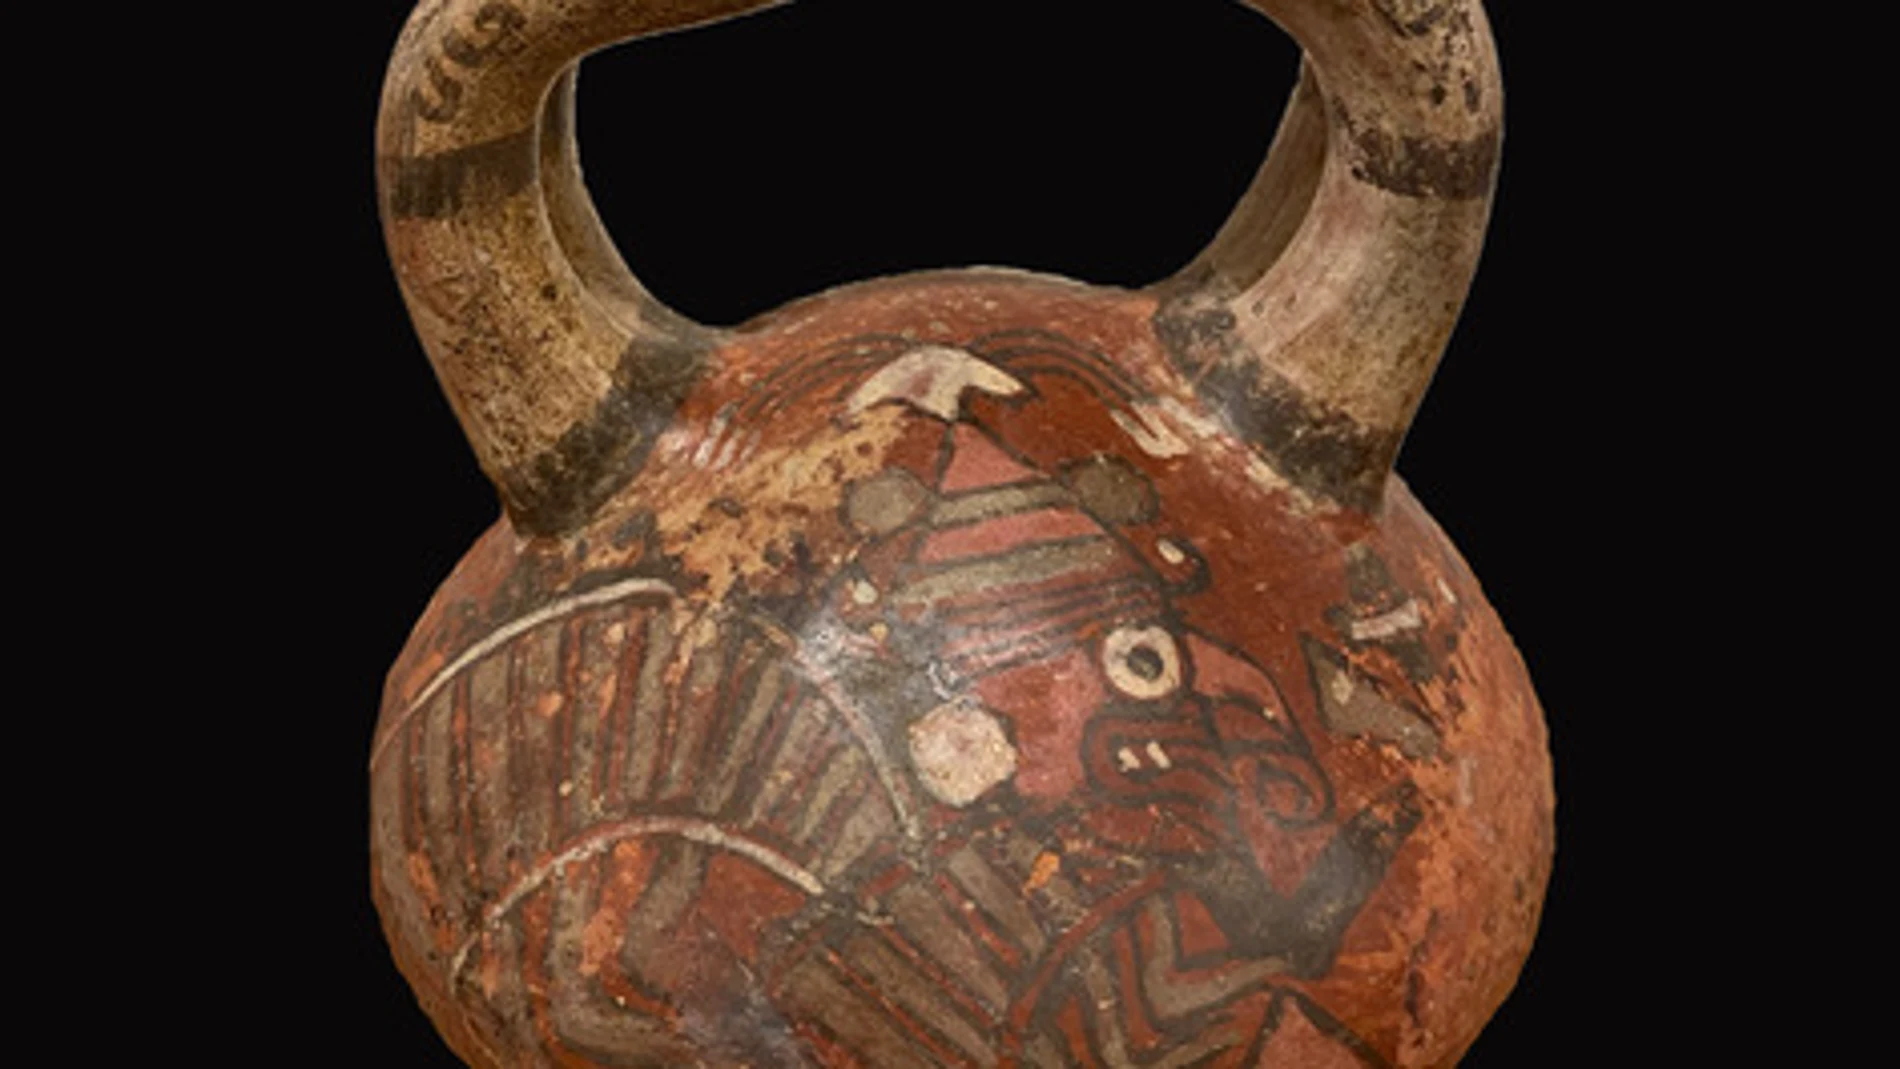 Vasija de cerámica de la región moche del norte de Perú con pigmentos y técnicas de decoración de influencia wari.